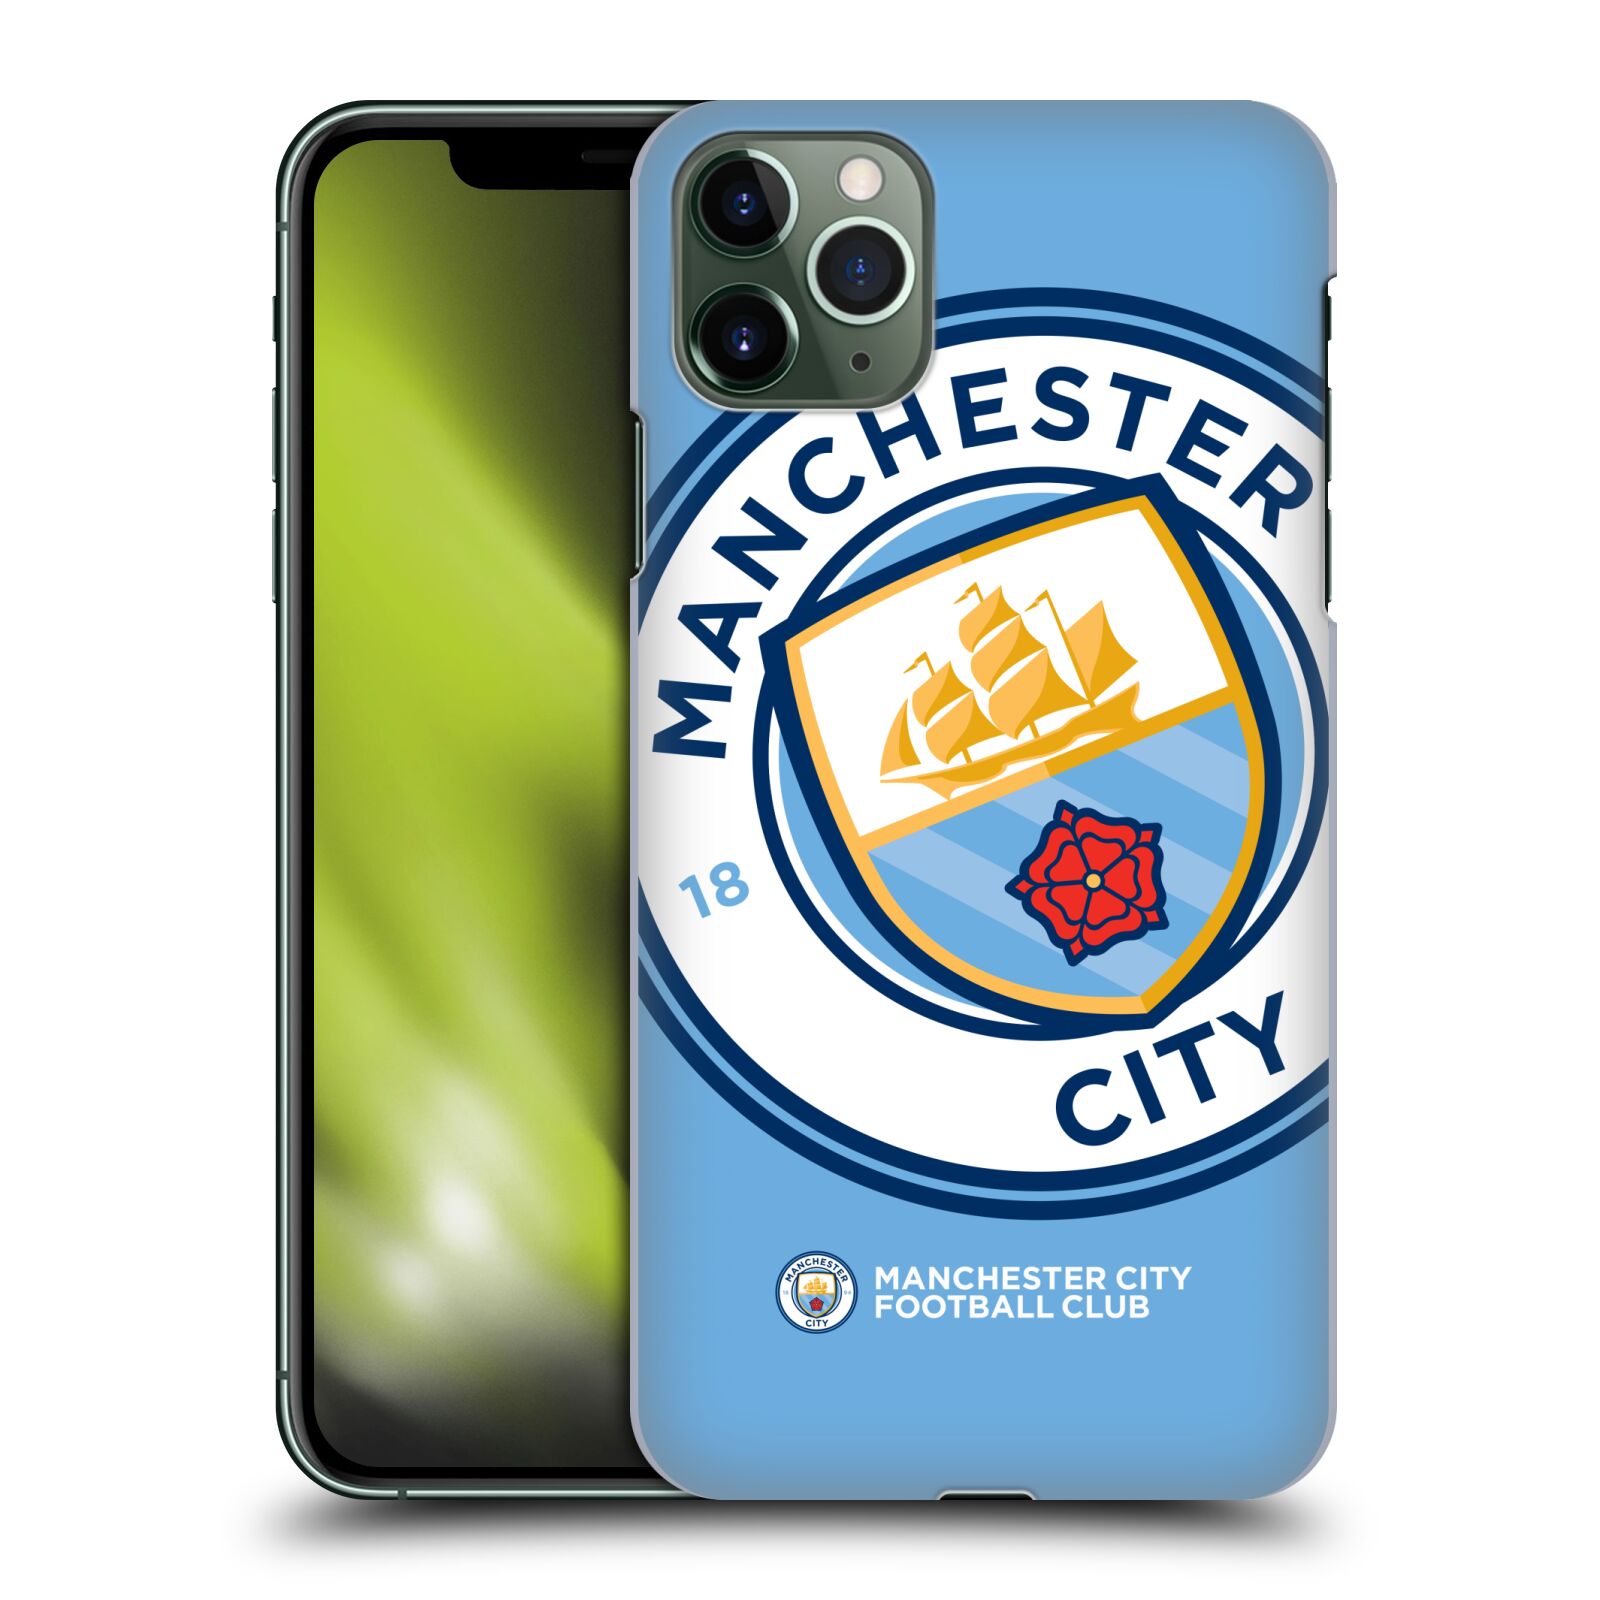 Pouzdro na mobil Apple Iphone 11 PRO MAX - HEAD CASE - Fotbalový klub Manchester City modrý velký přesahující znak